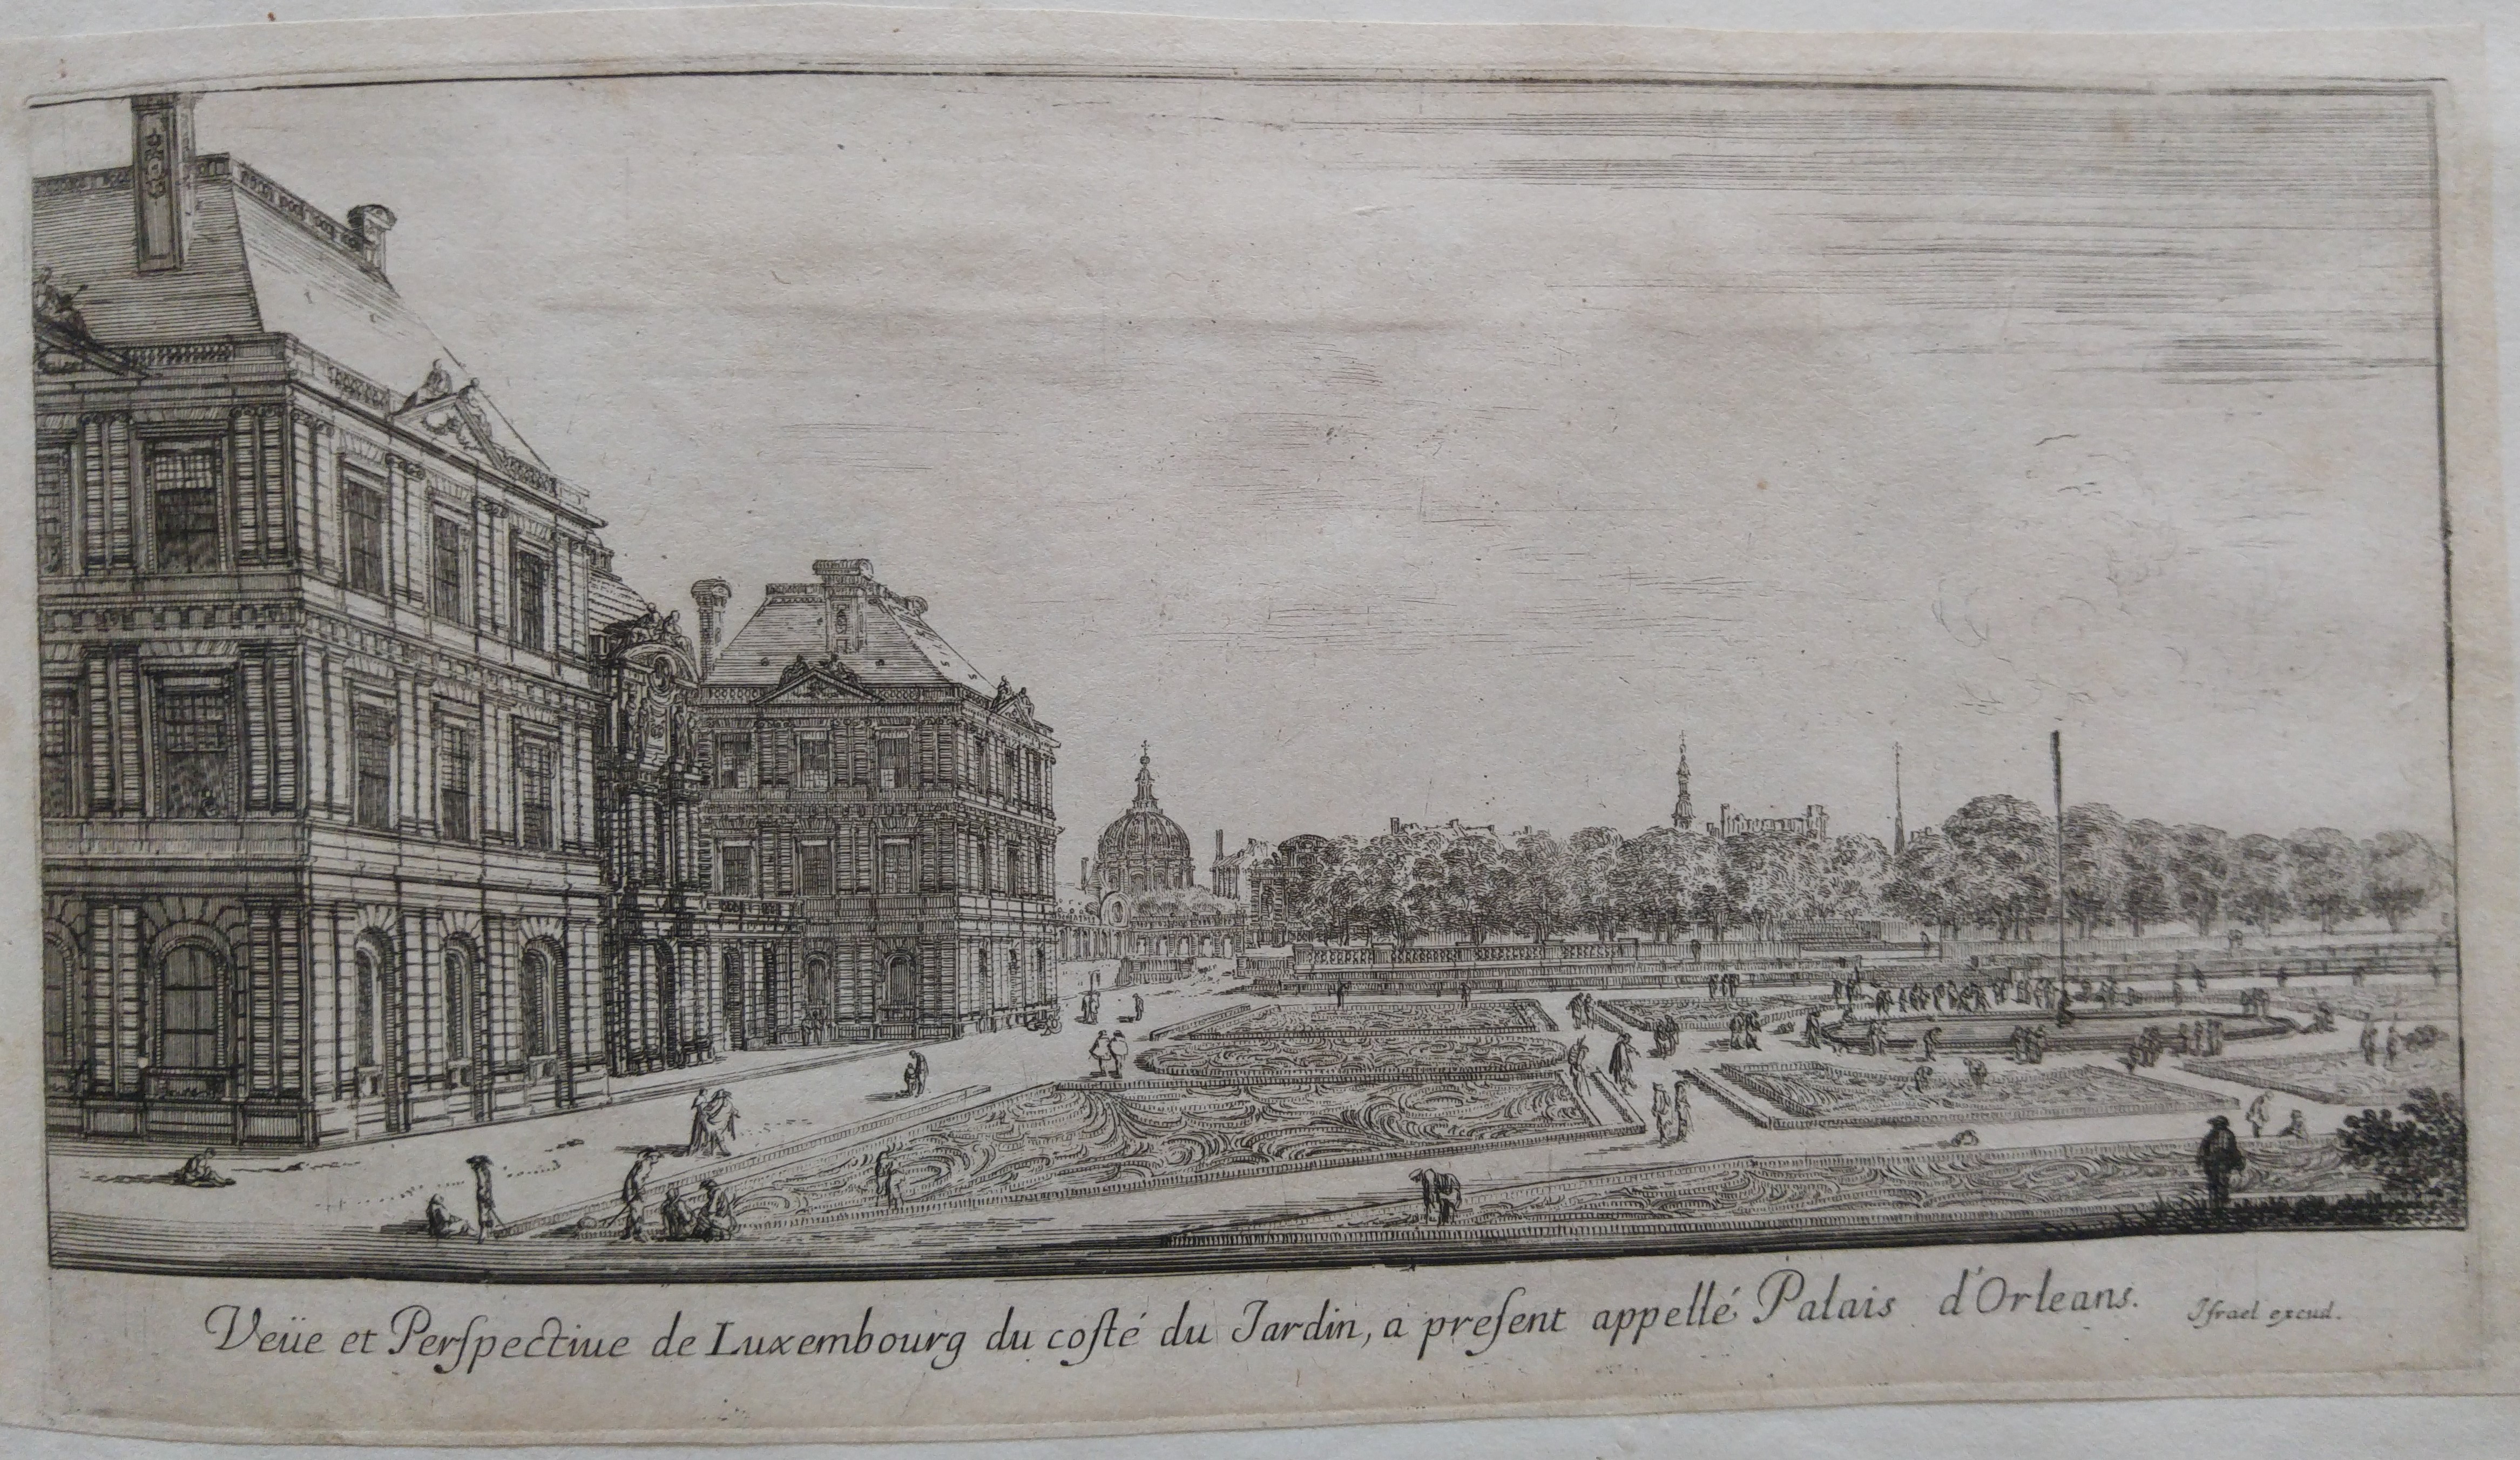 Veüe et Perspectiue de Luxembourg du costé du Jardin, a present appellé Palais d'Orleans